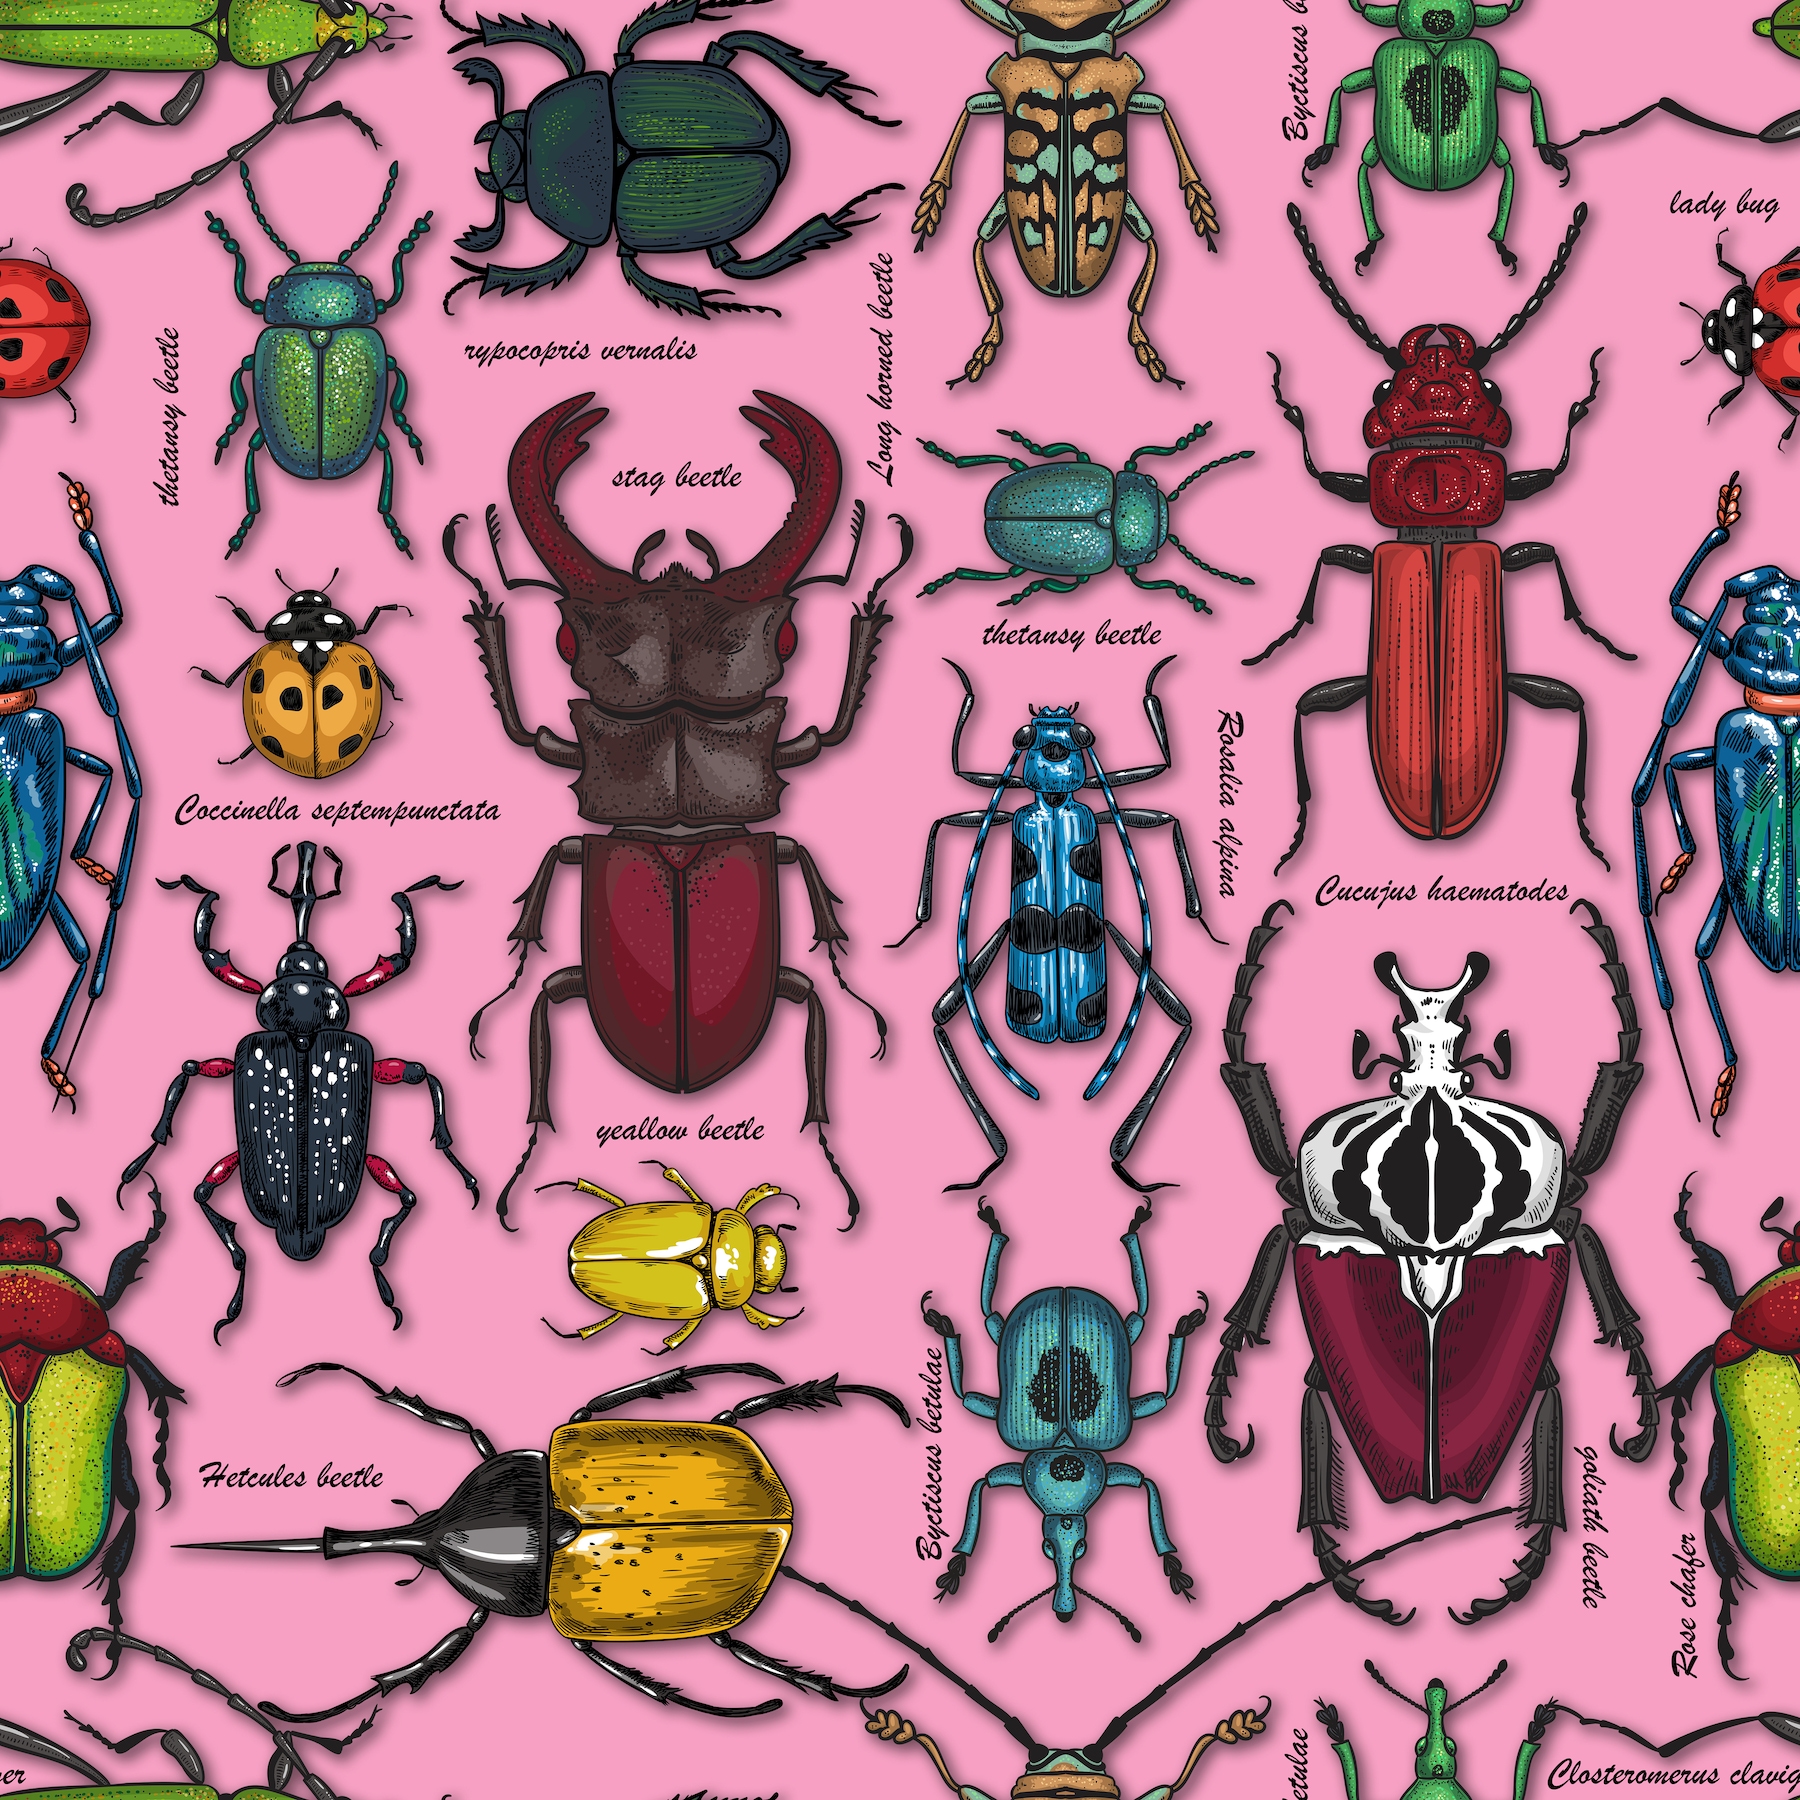 Buy Beautiful Beetles On Pink Wallpaper Online - Happywall